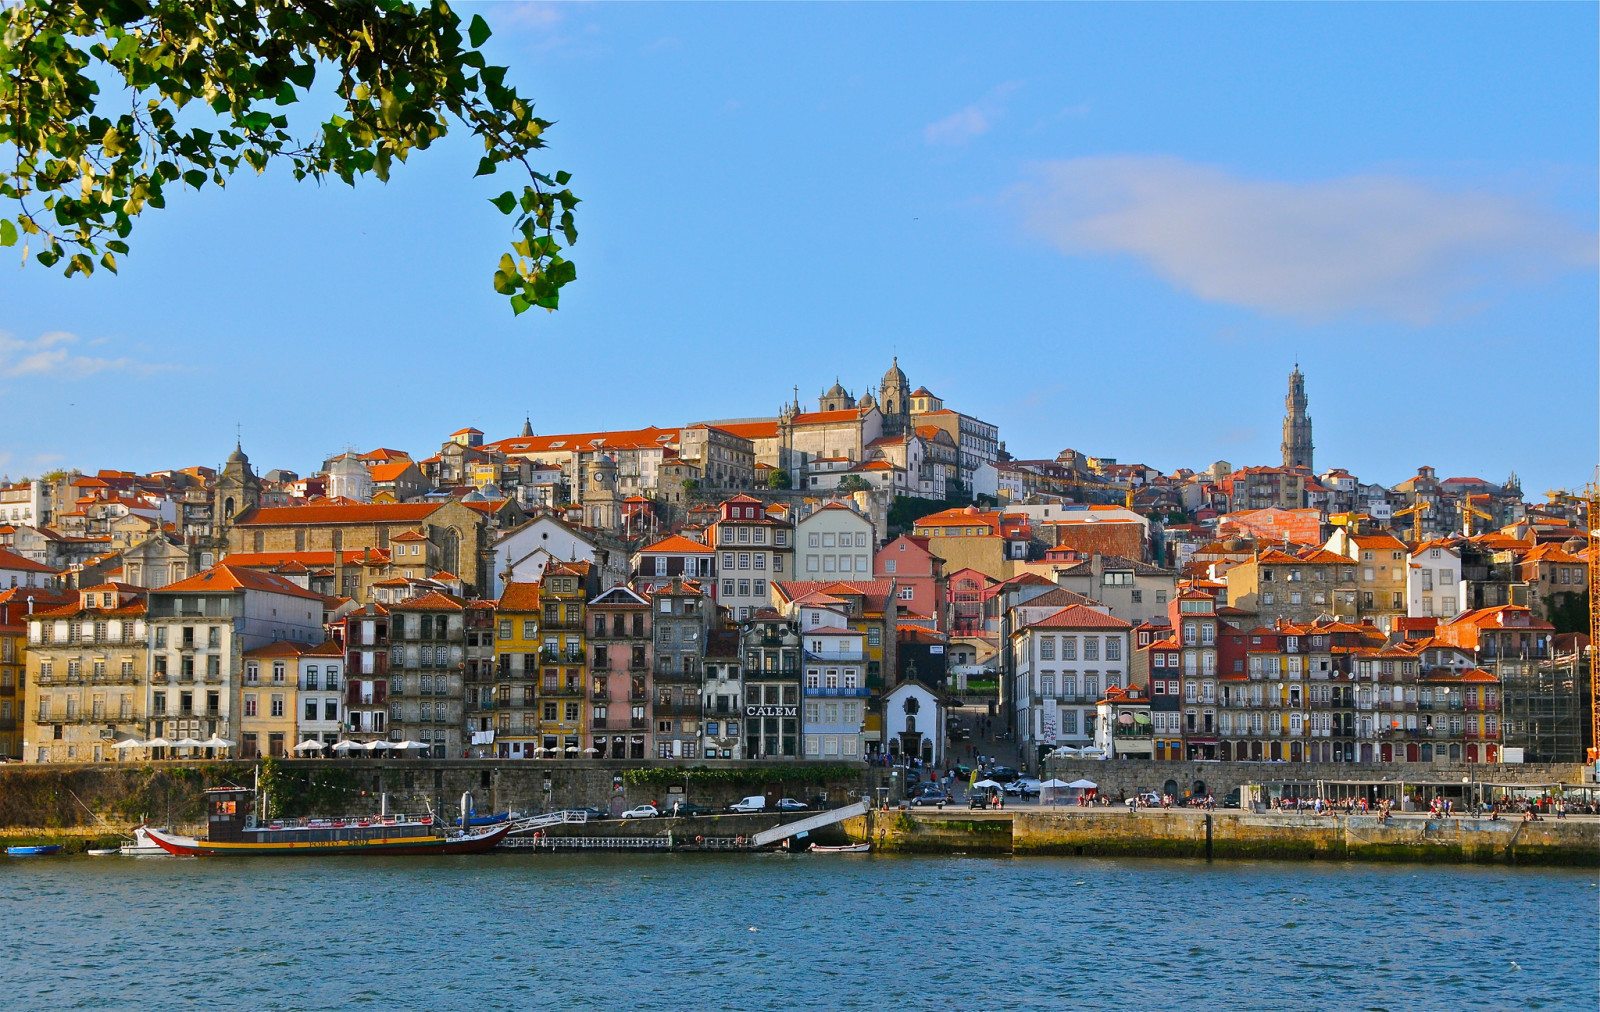 แม่น้ำ, อาคาร, เดินเล่น, ท่าเรือ, โปรตุเกส, แม่น้ำโดรู, Vila Nova de Gaia, ปอร์โต